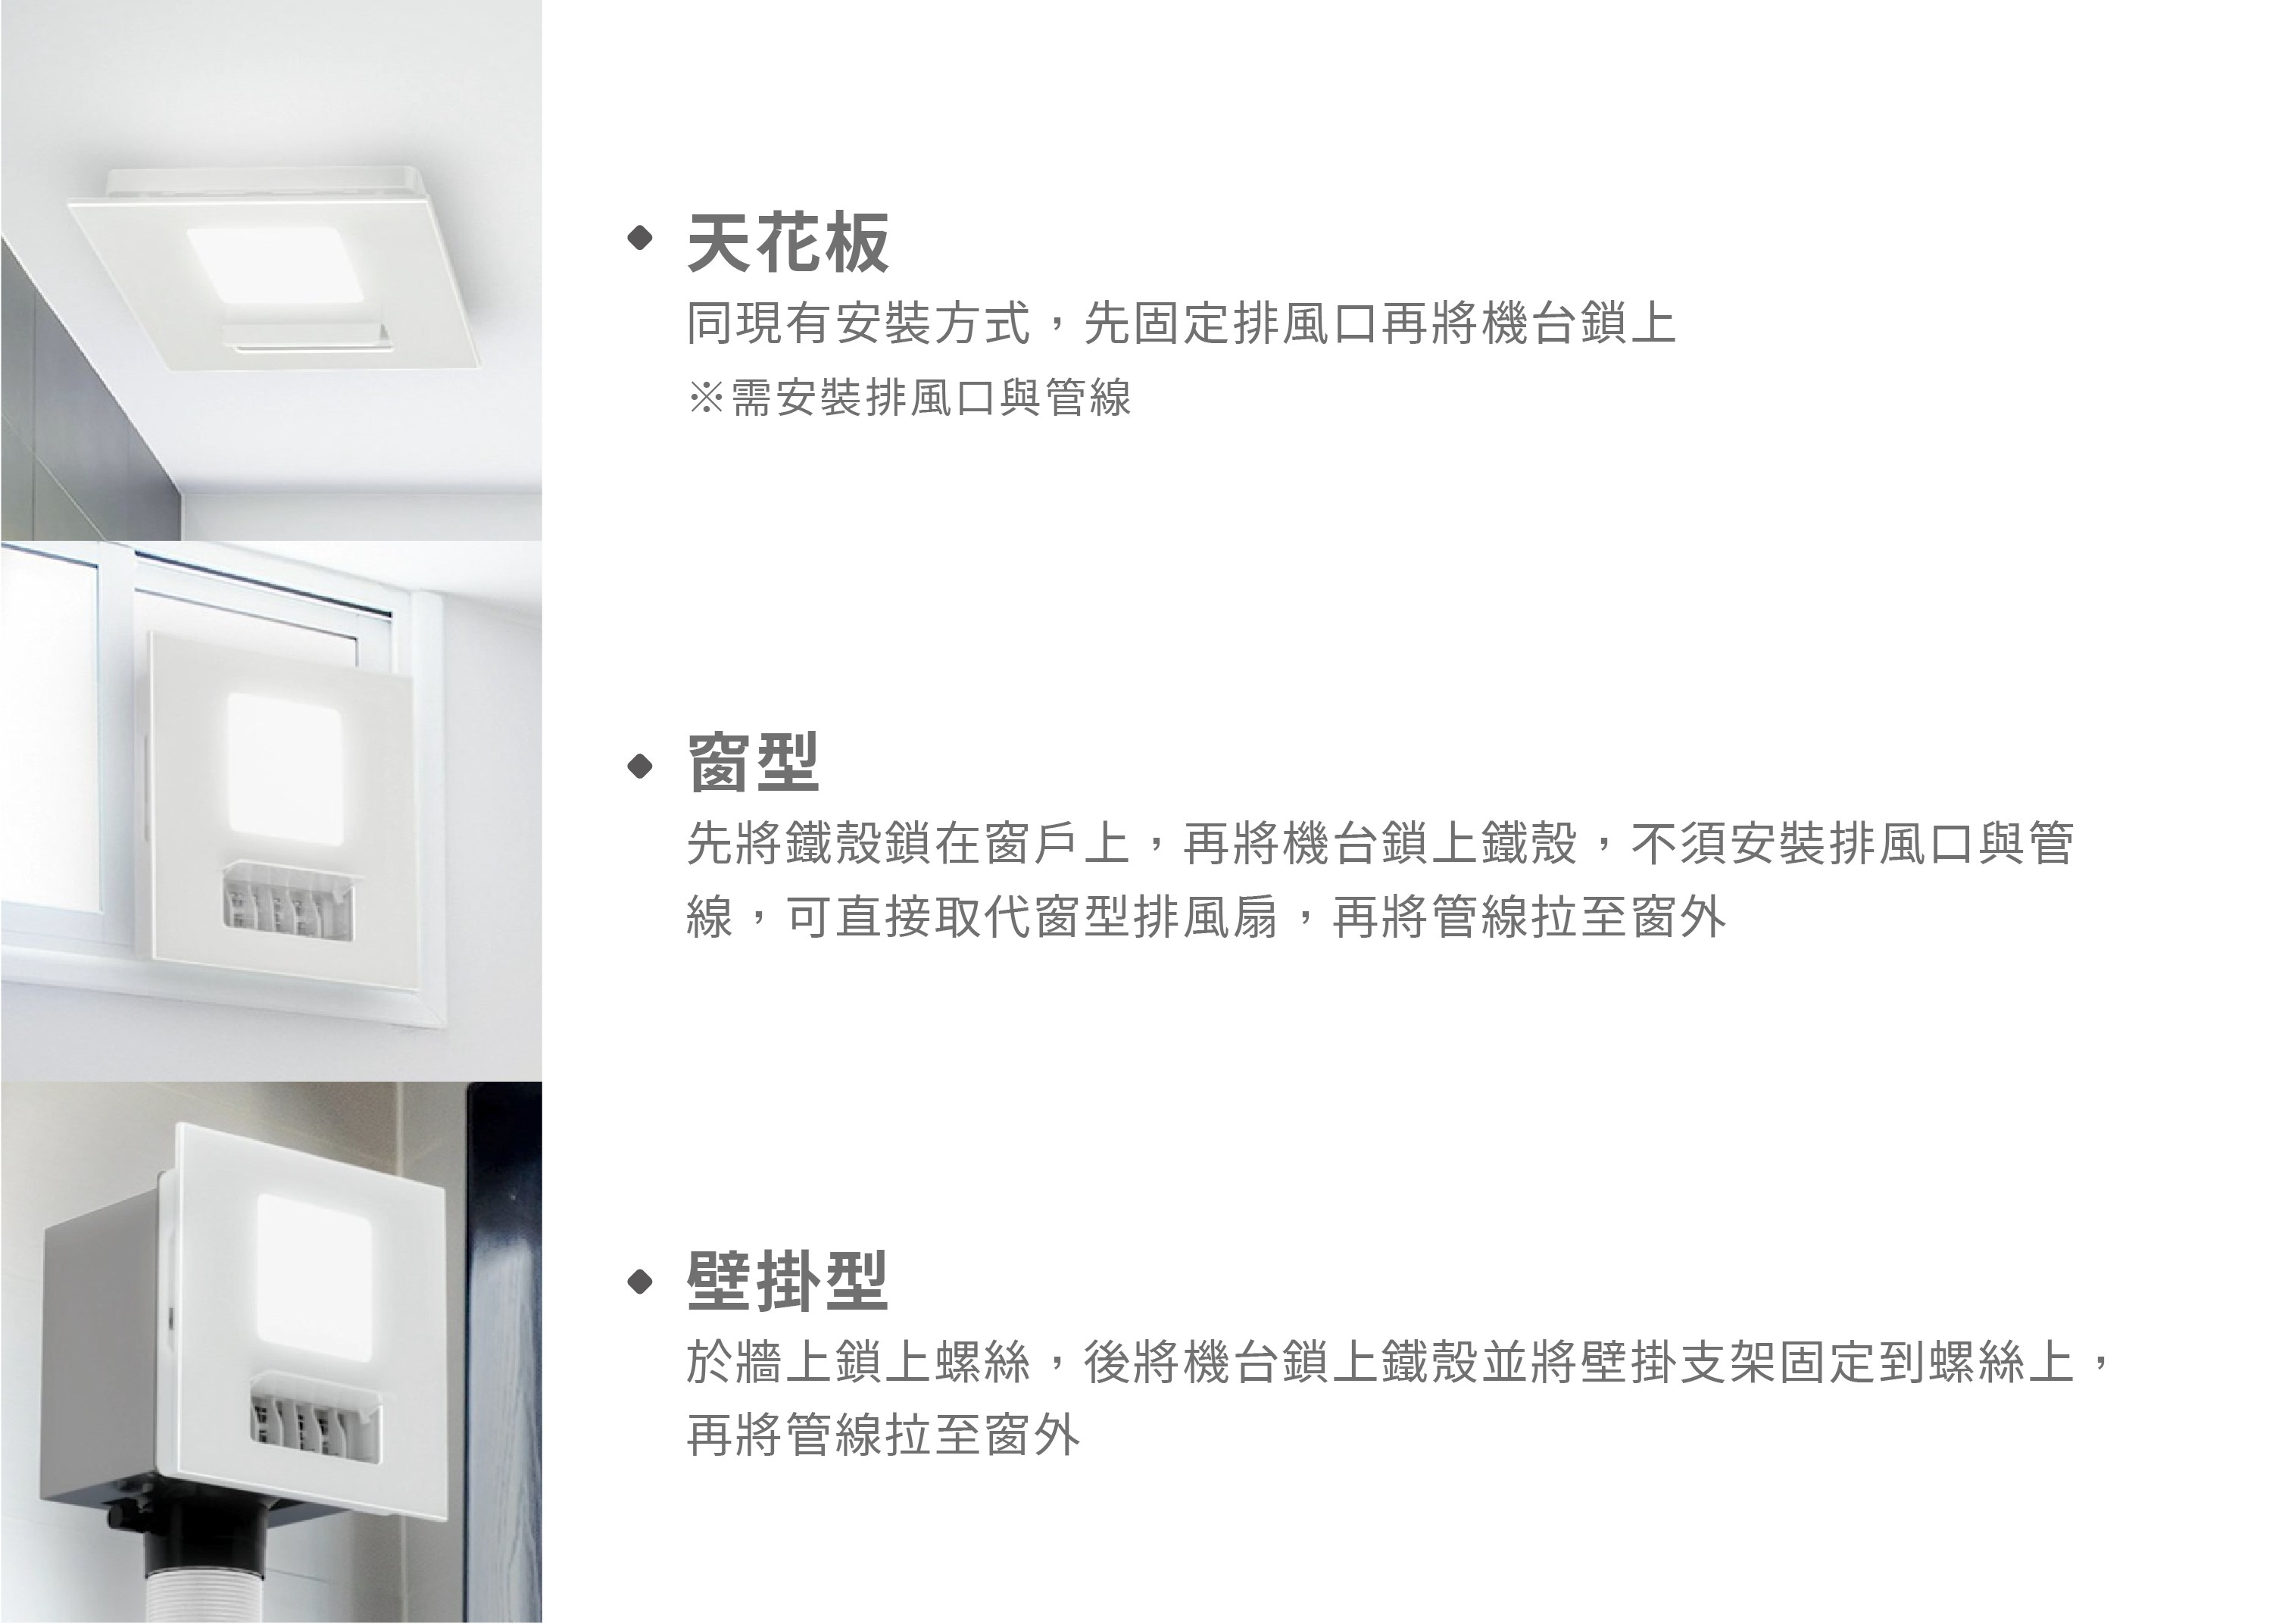 21型LED照明變頻暖房乾燥機